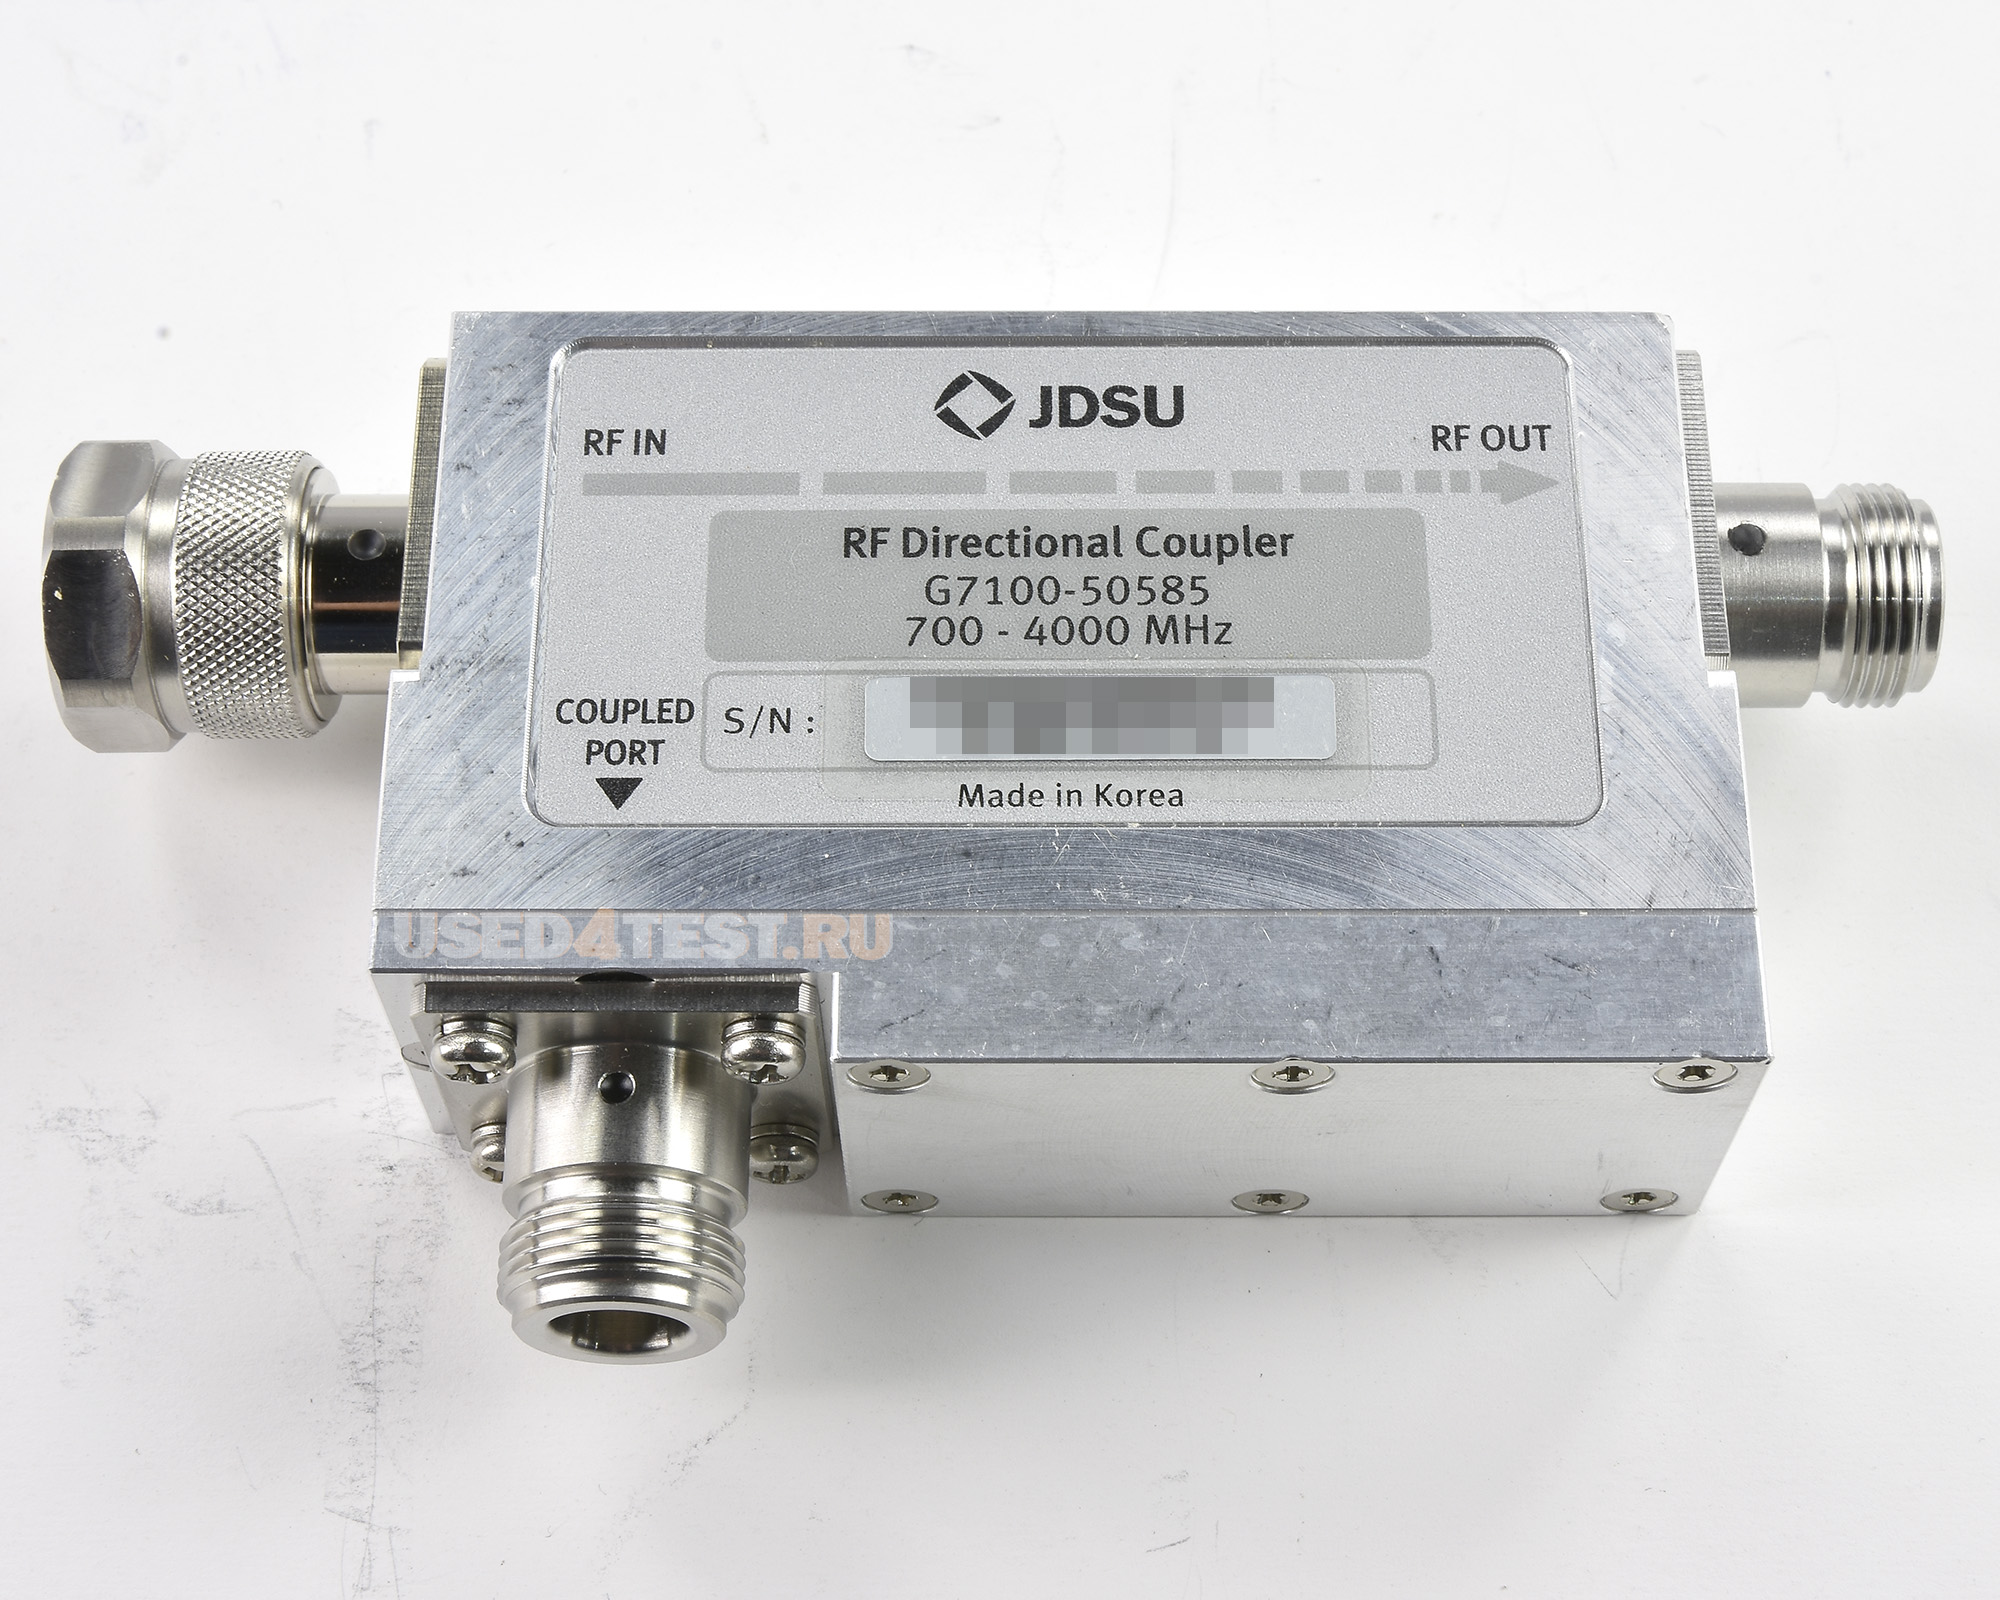 Анализатор базовых станций (анализатор спектра, измеритель мощности, анализатор АФУ)
 JDSU JD785B 
 Анализатор спектра: 9 кГц — 8 ГГц
 
Анализатор АФУ: 5 МГц — 6 ГГц
 
Измеритель мощности: 10 МГц — 8 ГГц
 
